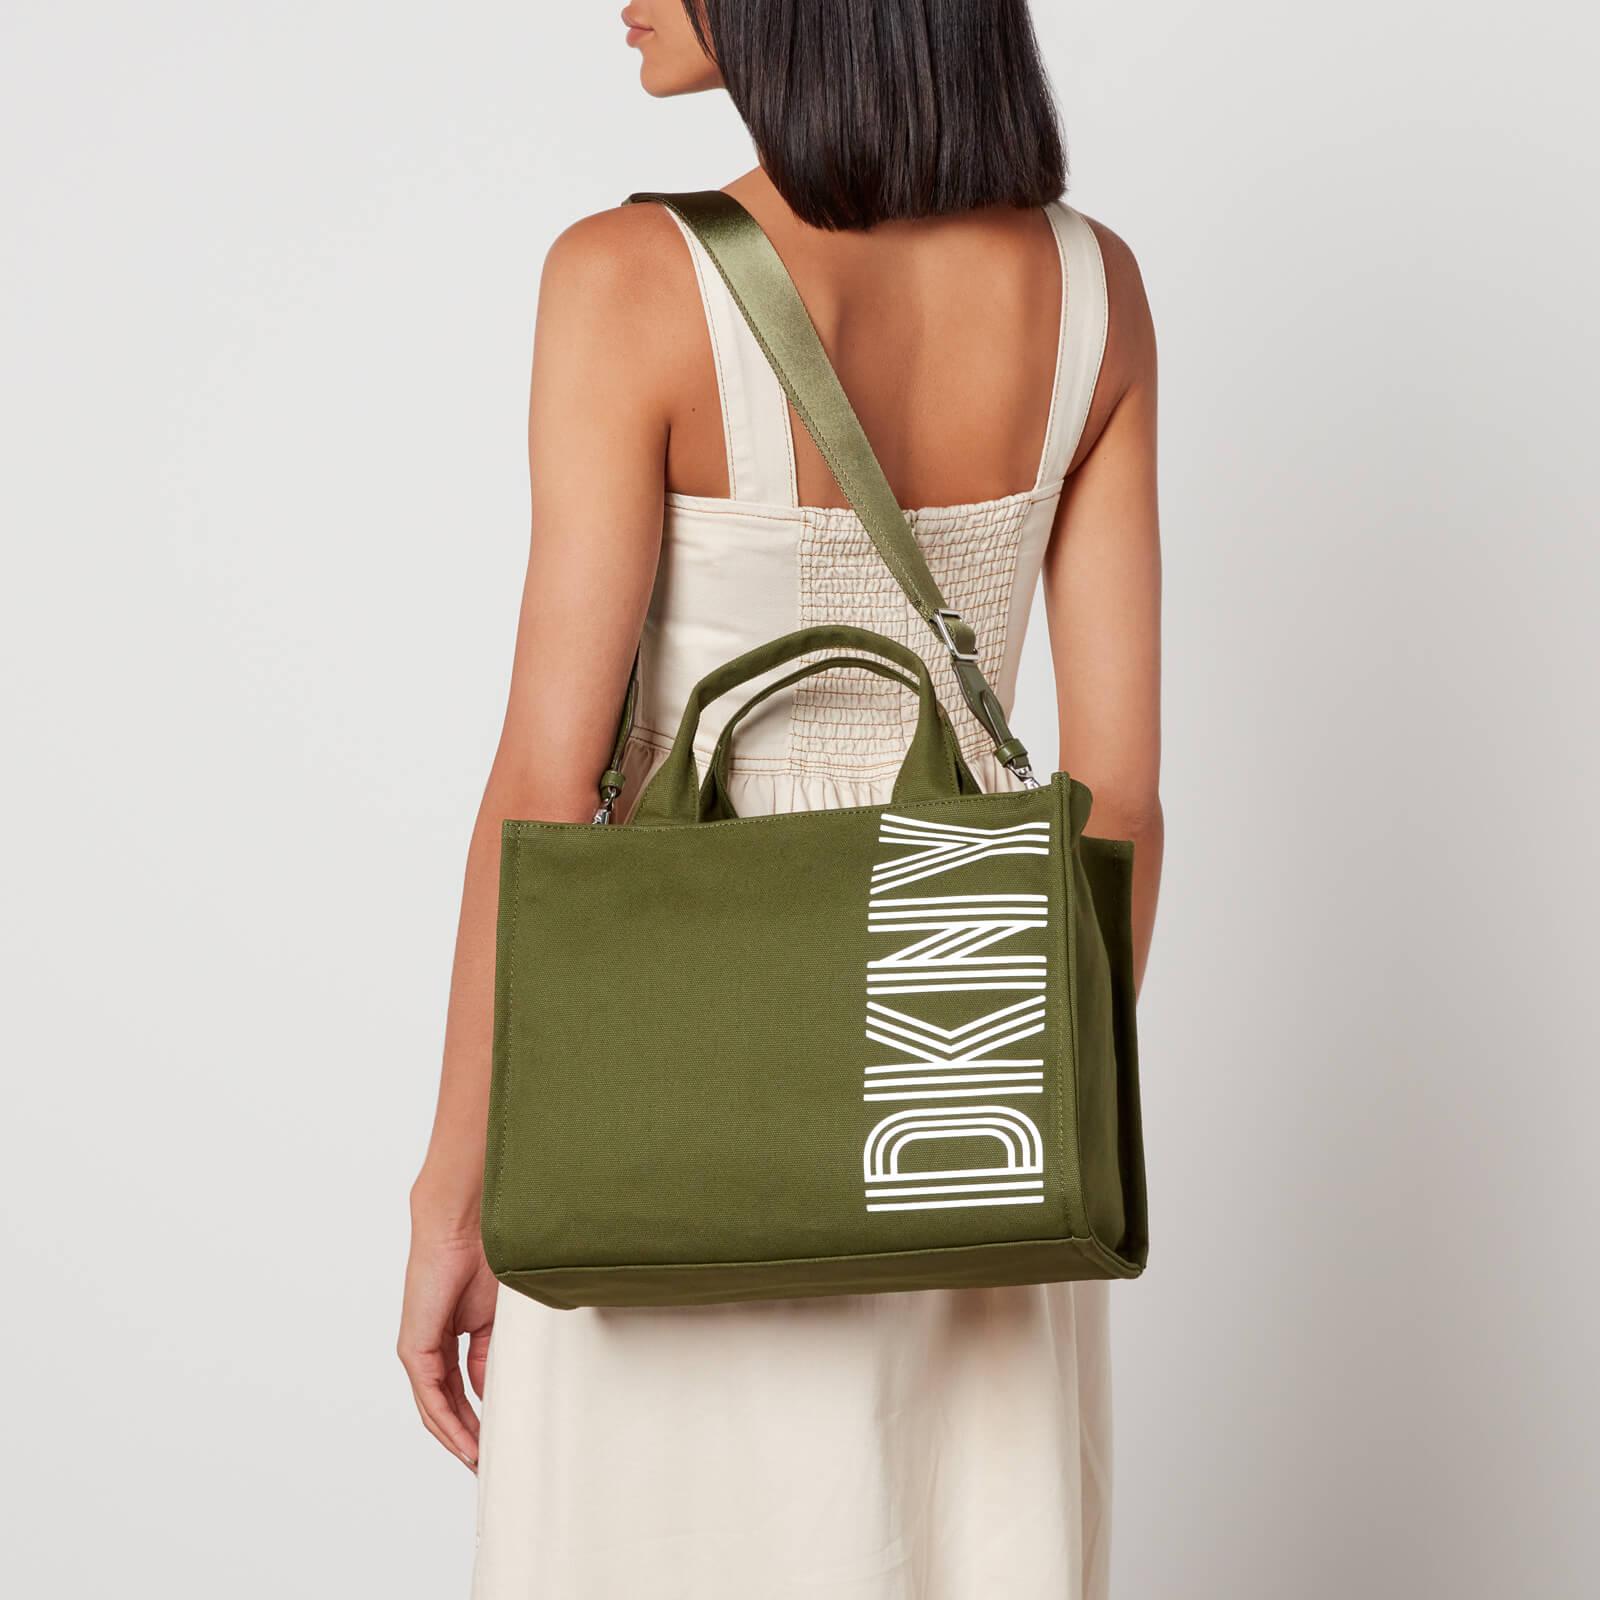 DKNY Noa Medium Canvas Tote Bag in Green